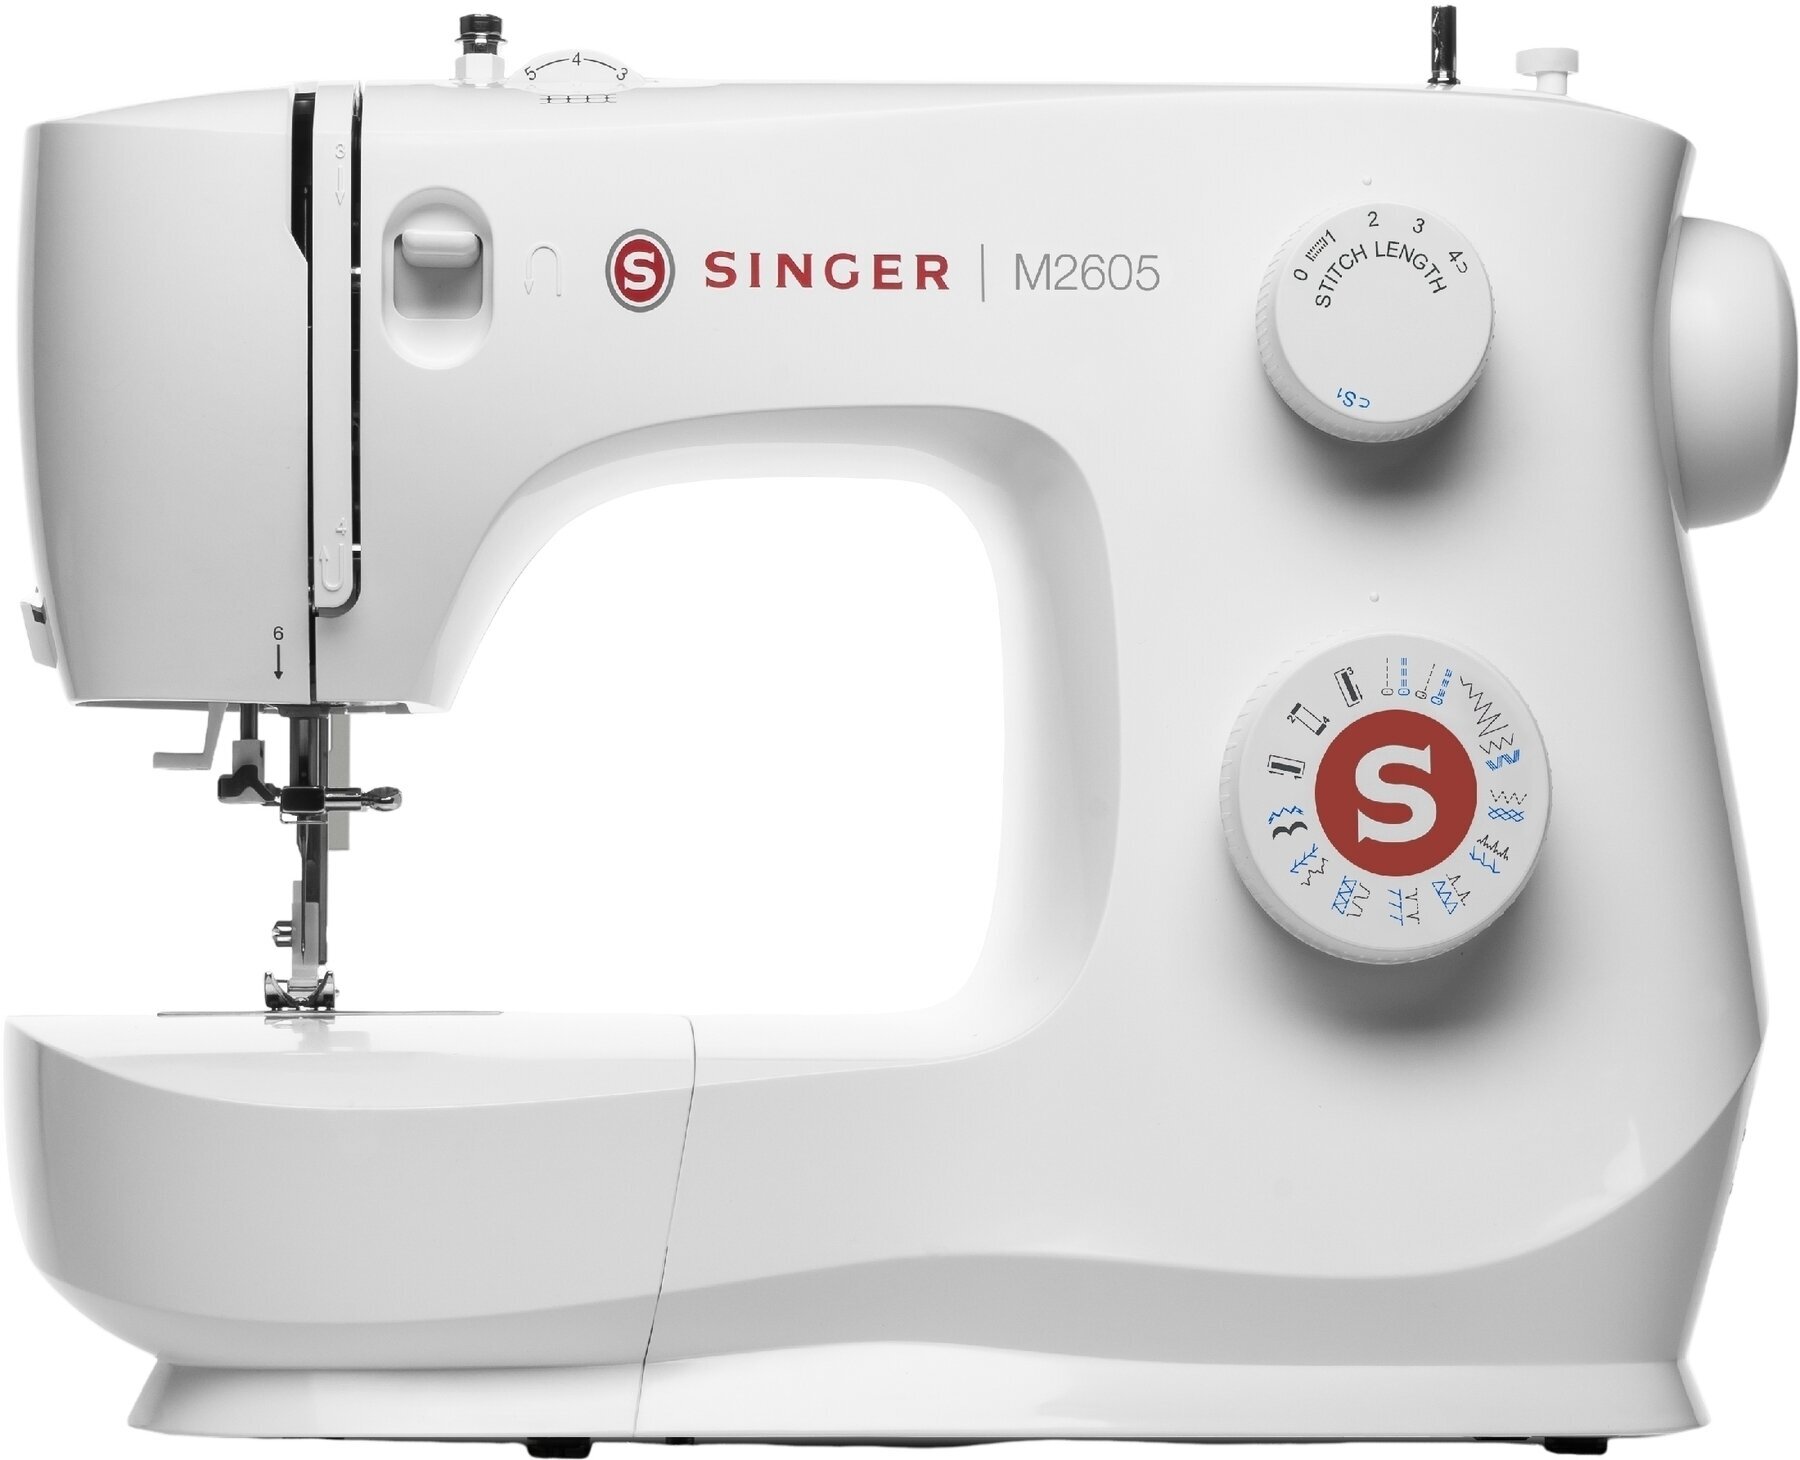 Sewing Machine Singer M2605